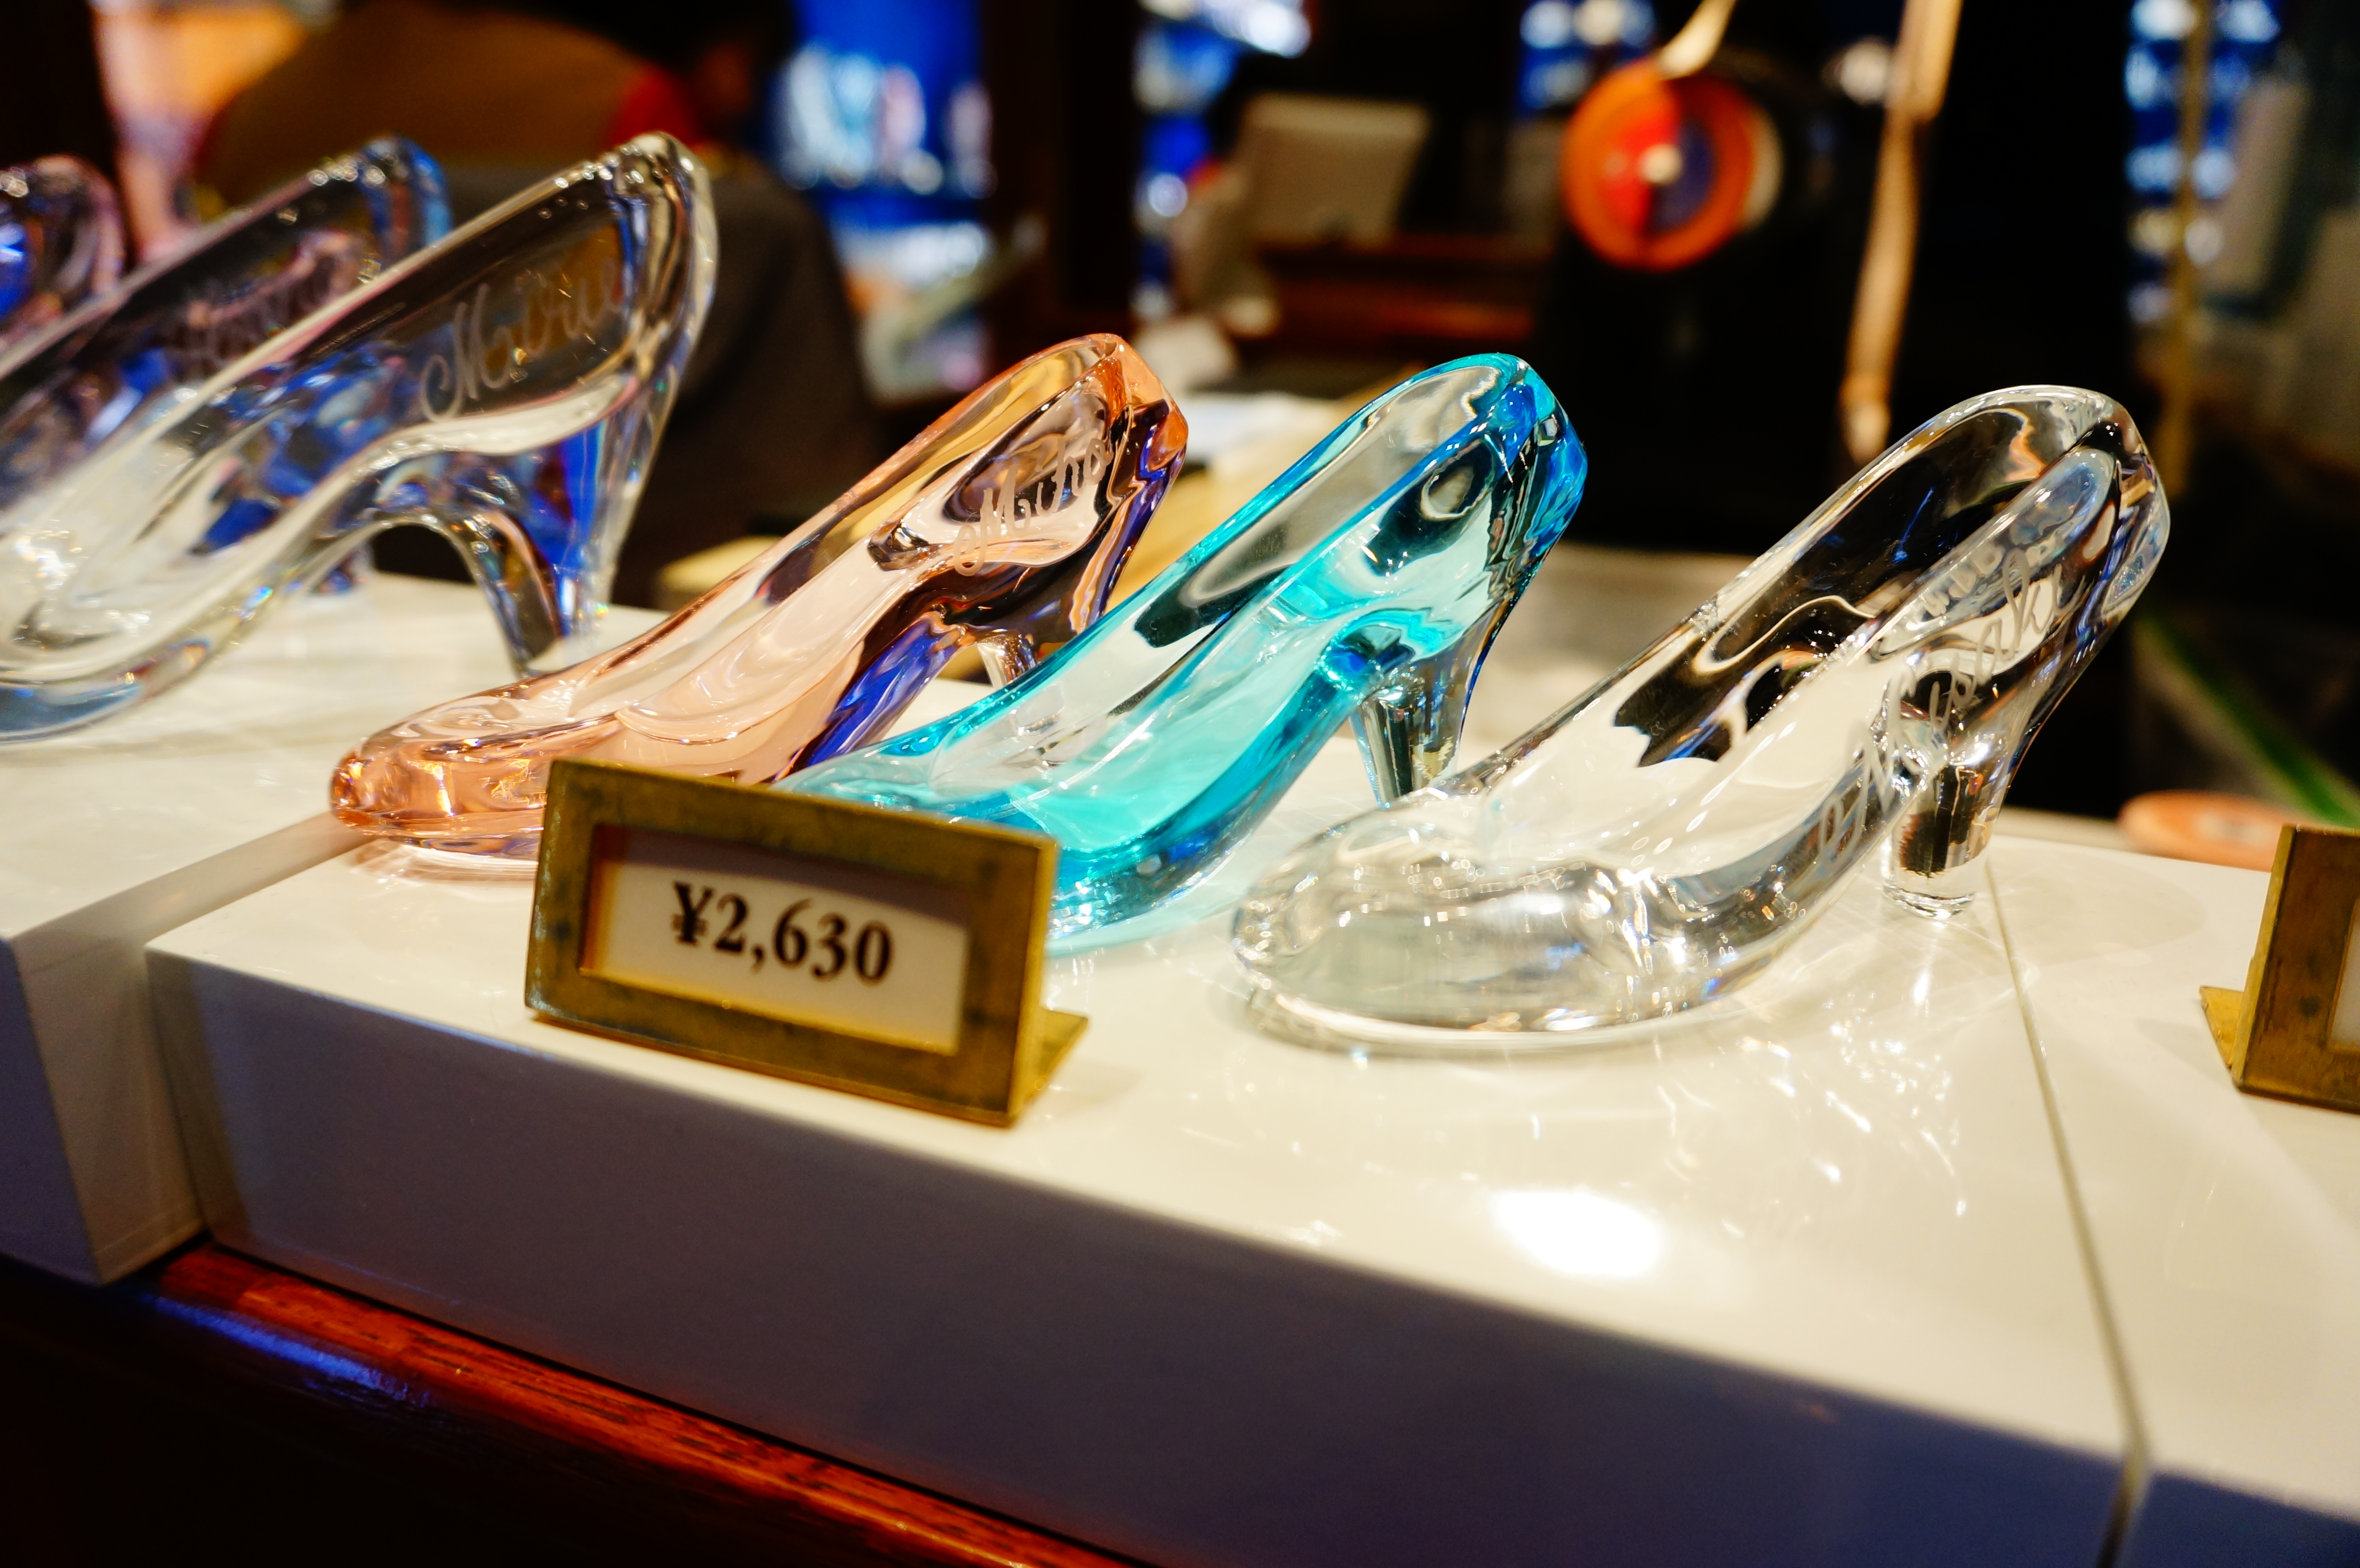 ディズニー ガラスの靴 販売場所 値段 サイズ シーでも買える 東京ディズニーランド シー旅行の攻略ブログ Tdrおとく旅